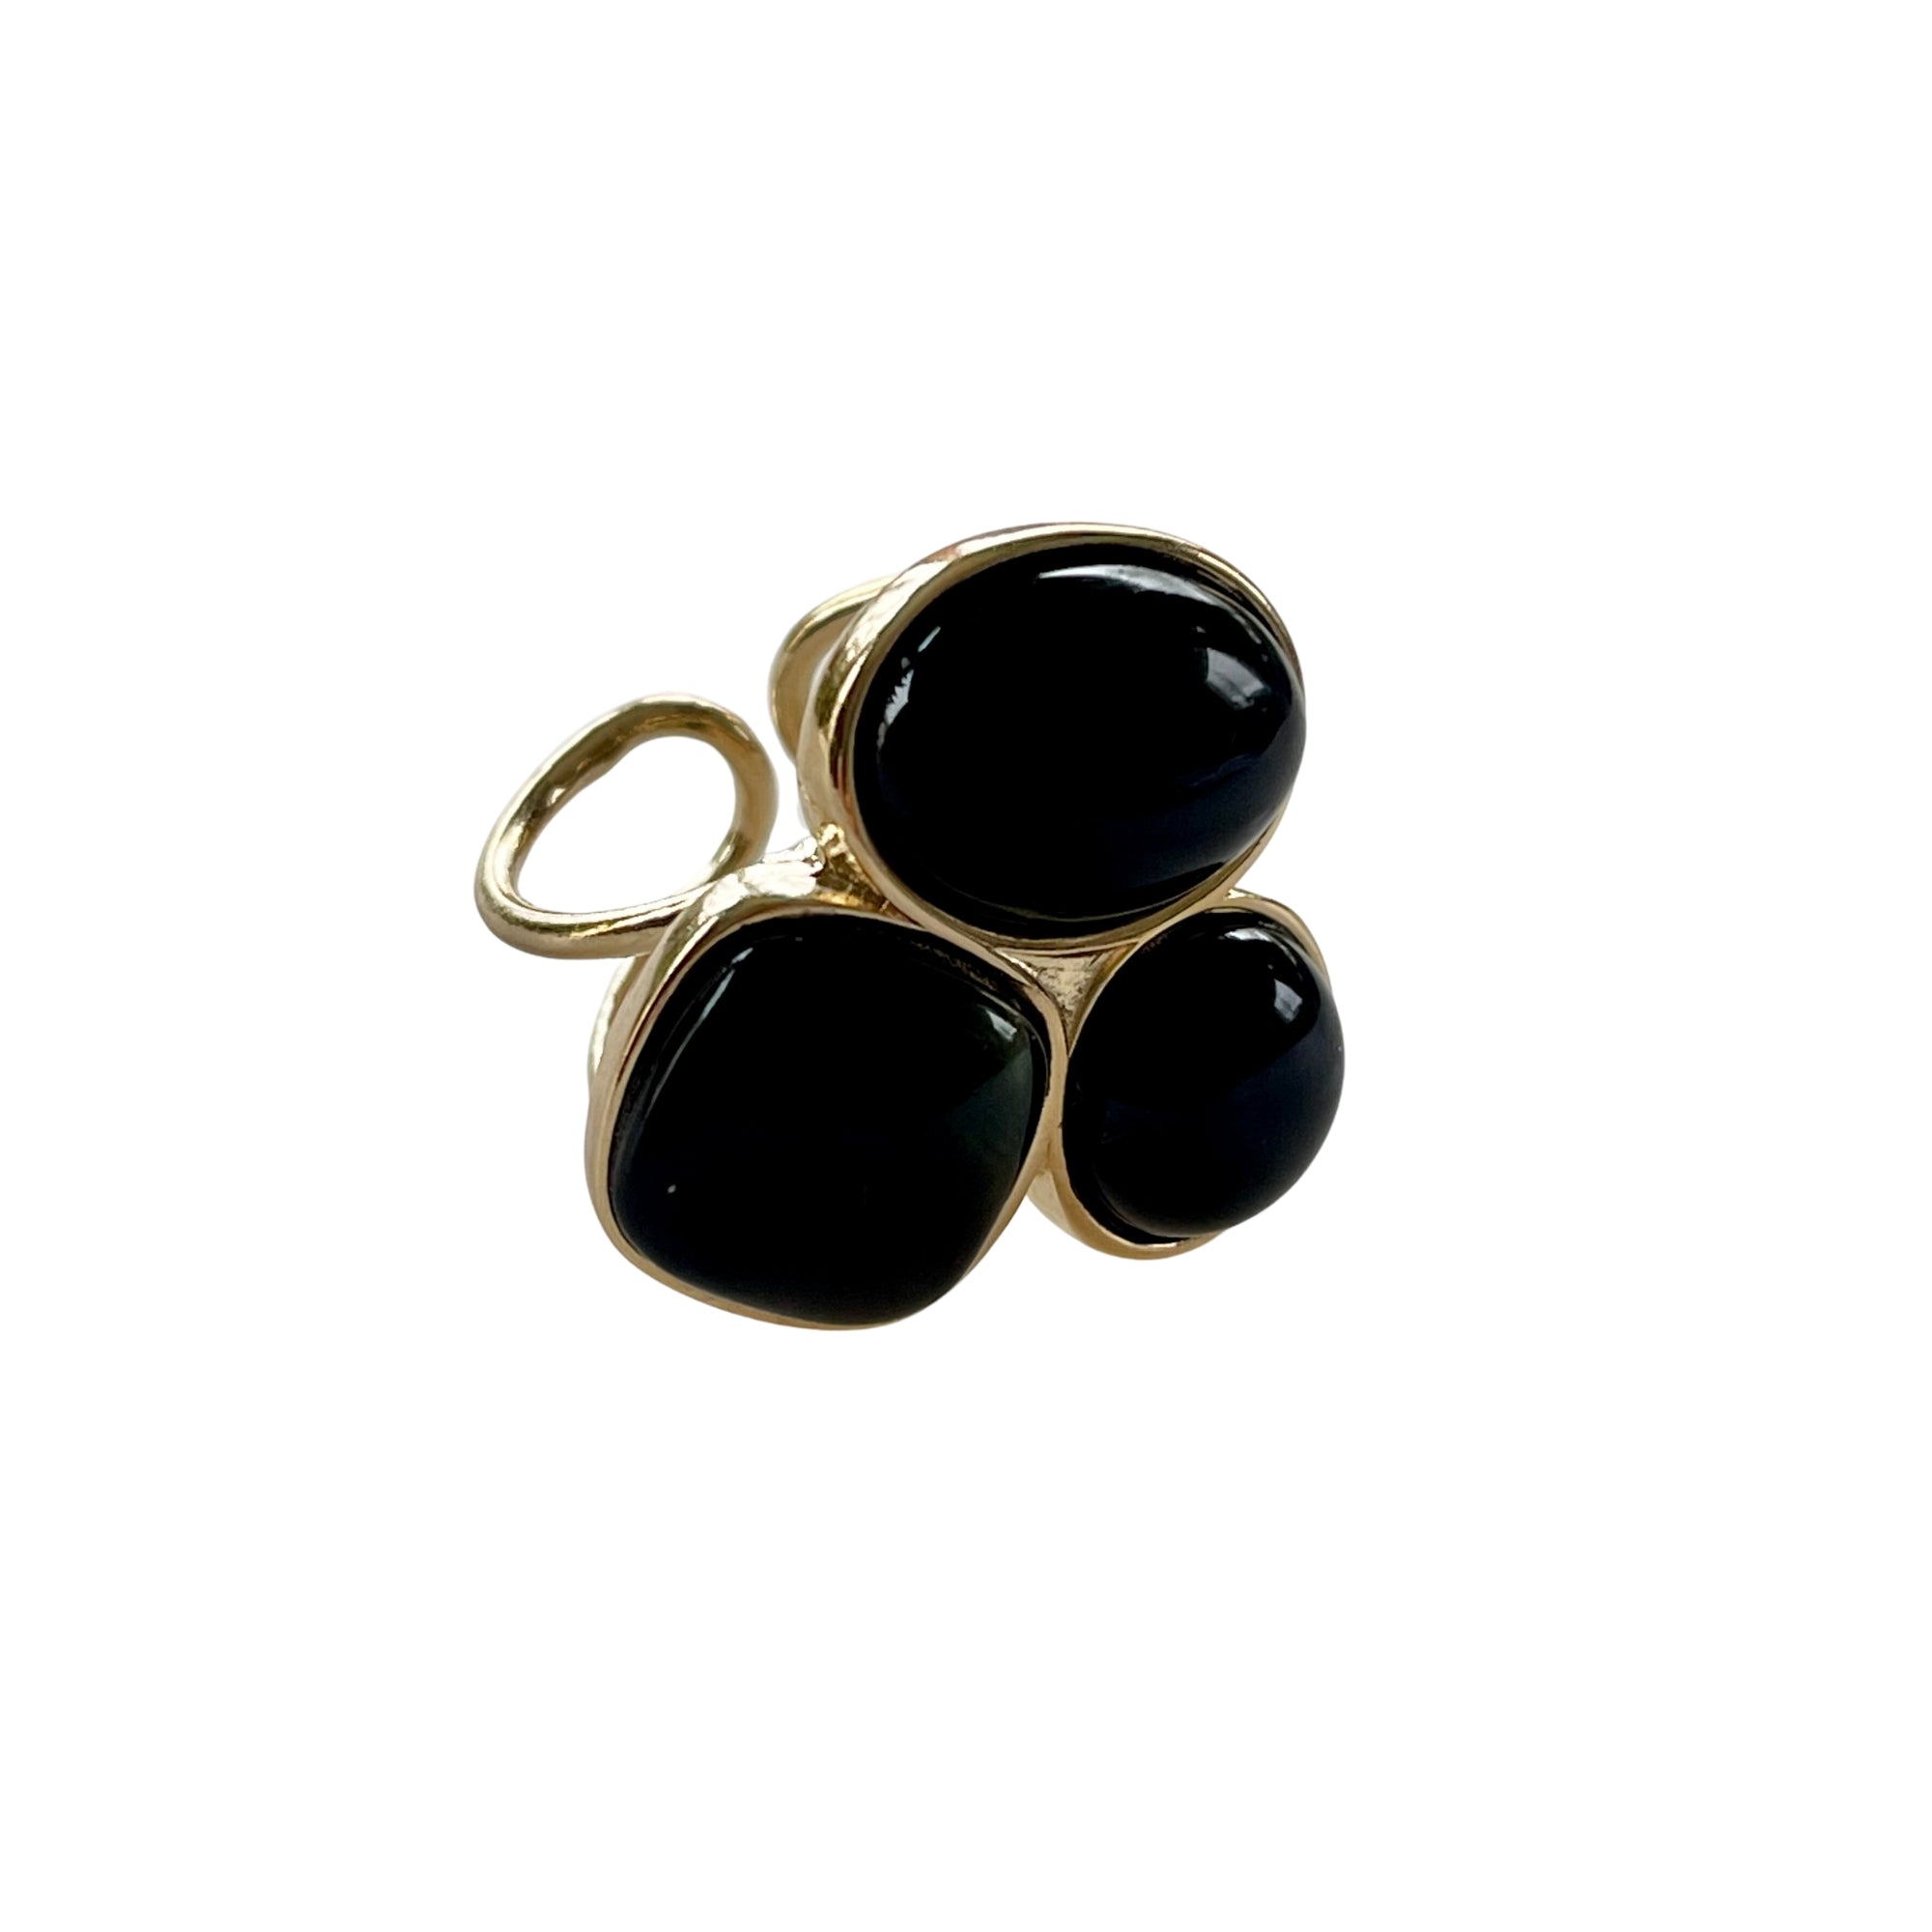 Der Ring "MARIANA" mit natürlichen schwarzen Achatsteinen strahlt pure Eleganz aus. Ein offener, verstellbarer Cocktailring. Dieser Ring ist perfekt für Frauen, die elegante und auffallende Stücke schätzen